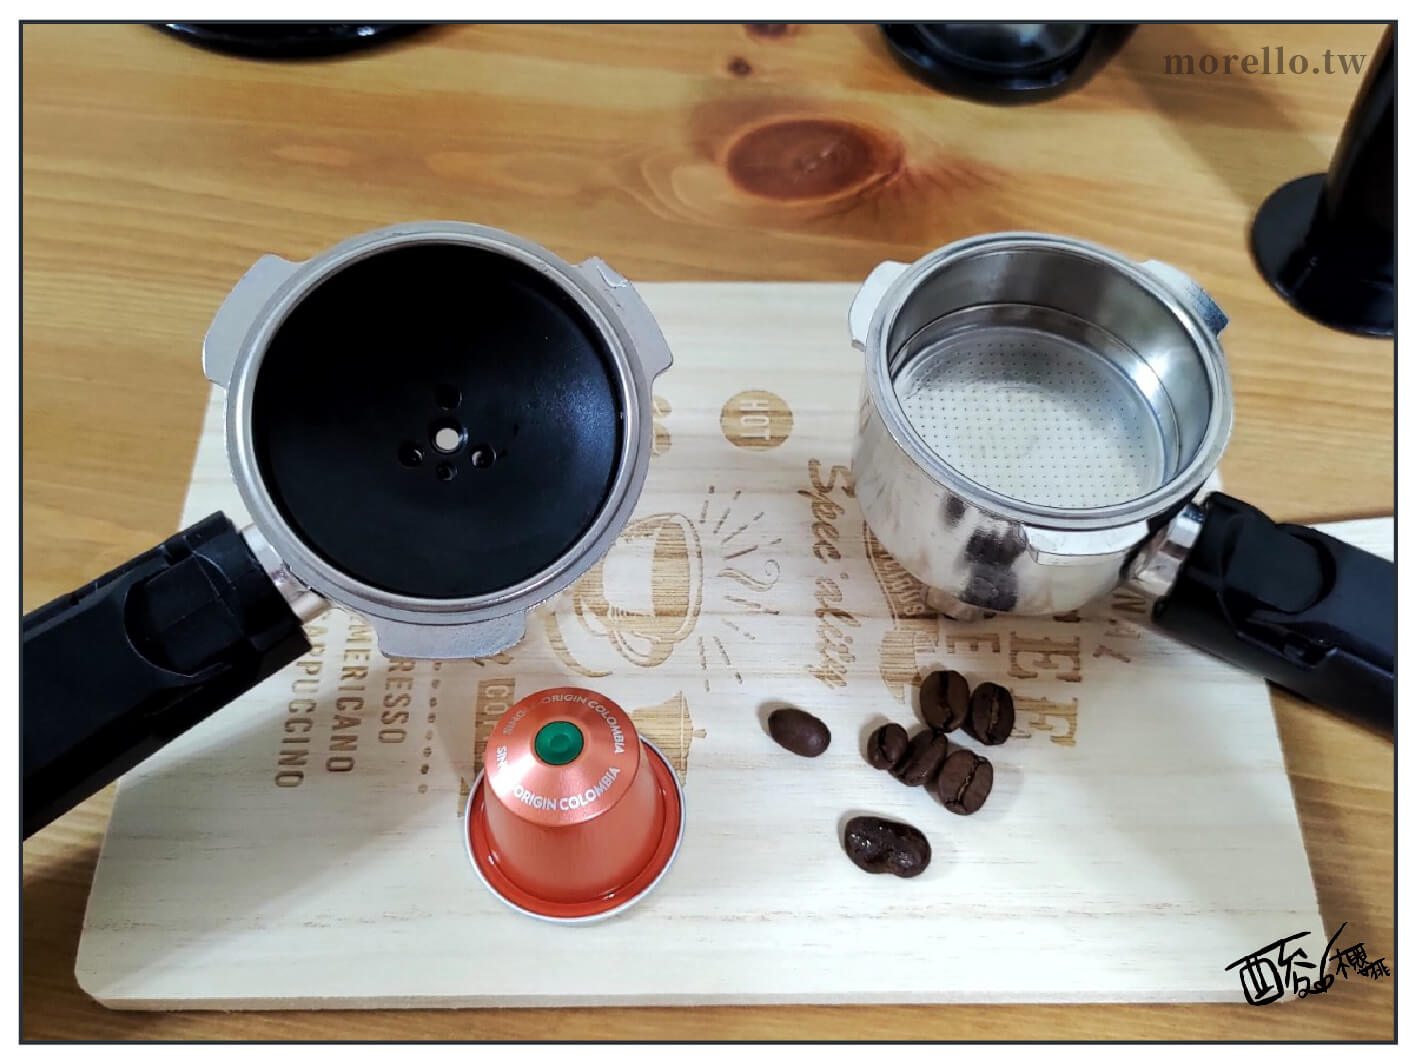 YIRGA CLASSIC 半自動義式咖啡機 的義式咖啡手柄與膠囊咖啡手柄